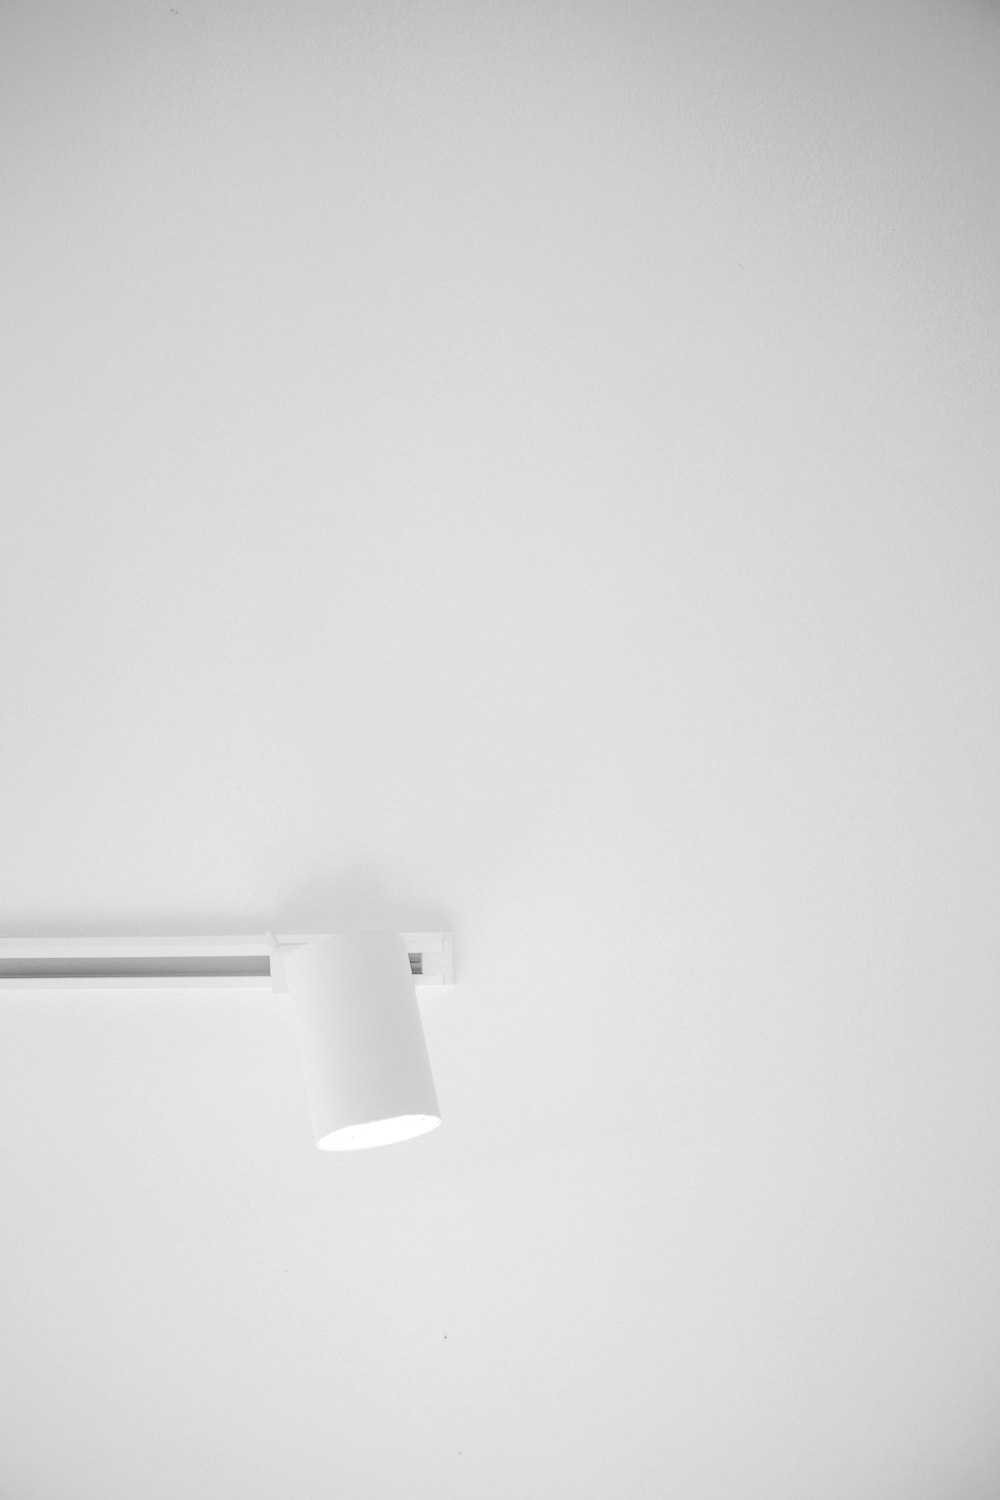 uma foto em preto e branco de uma luz de teto